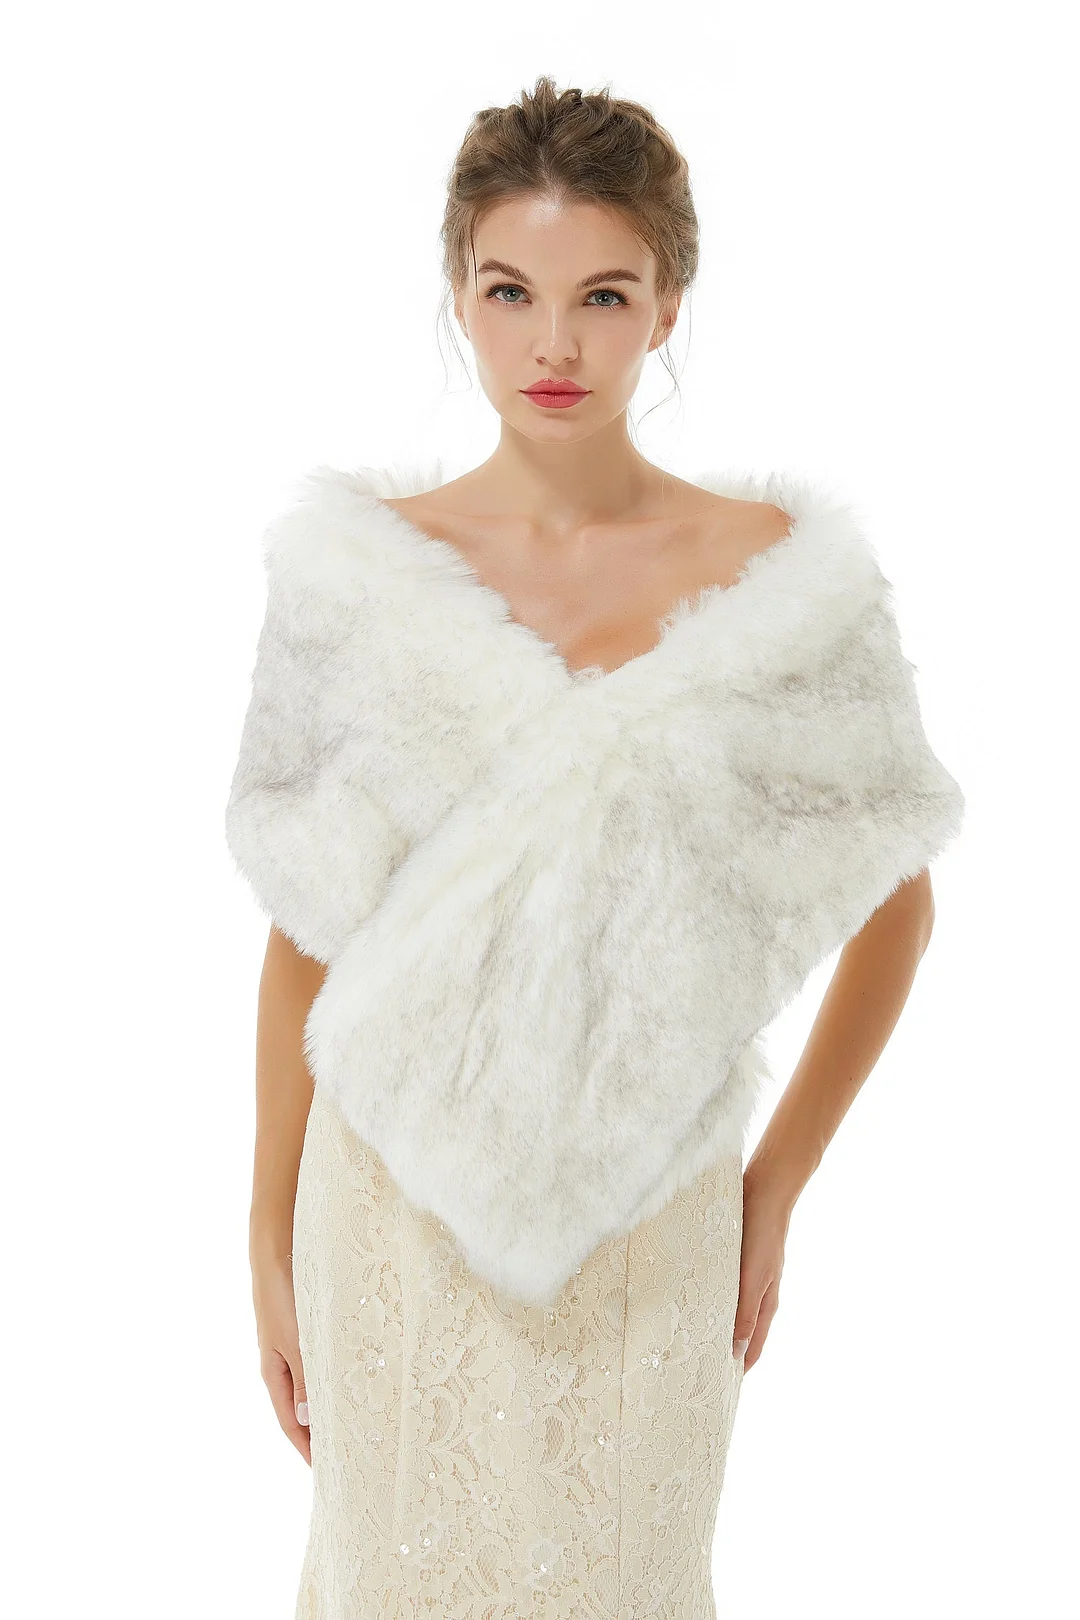 Bellasprom Pretty Ivory Faux Fur Wedding Shawl for Brides Online